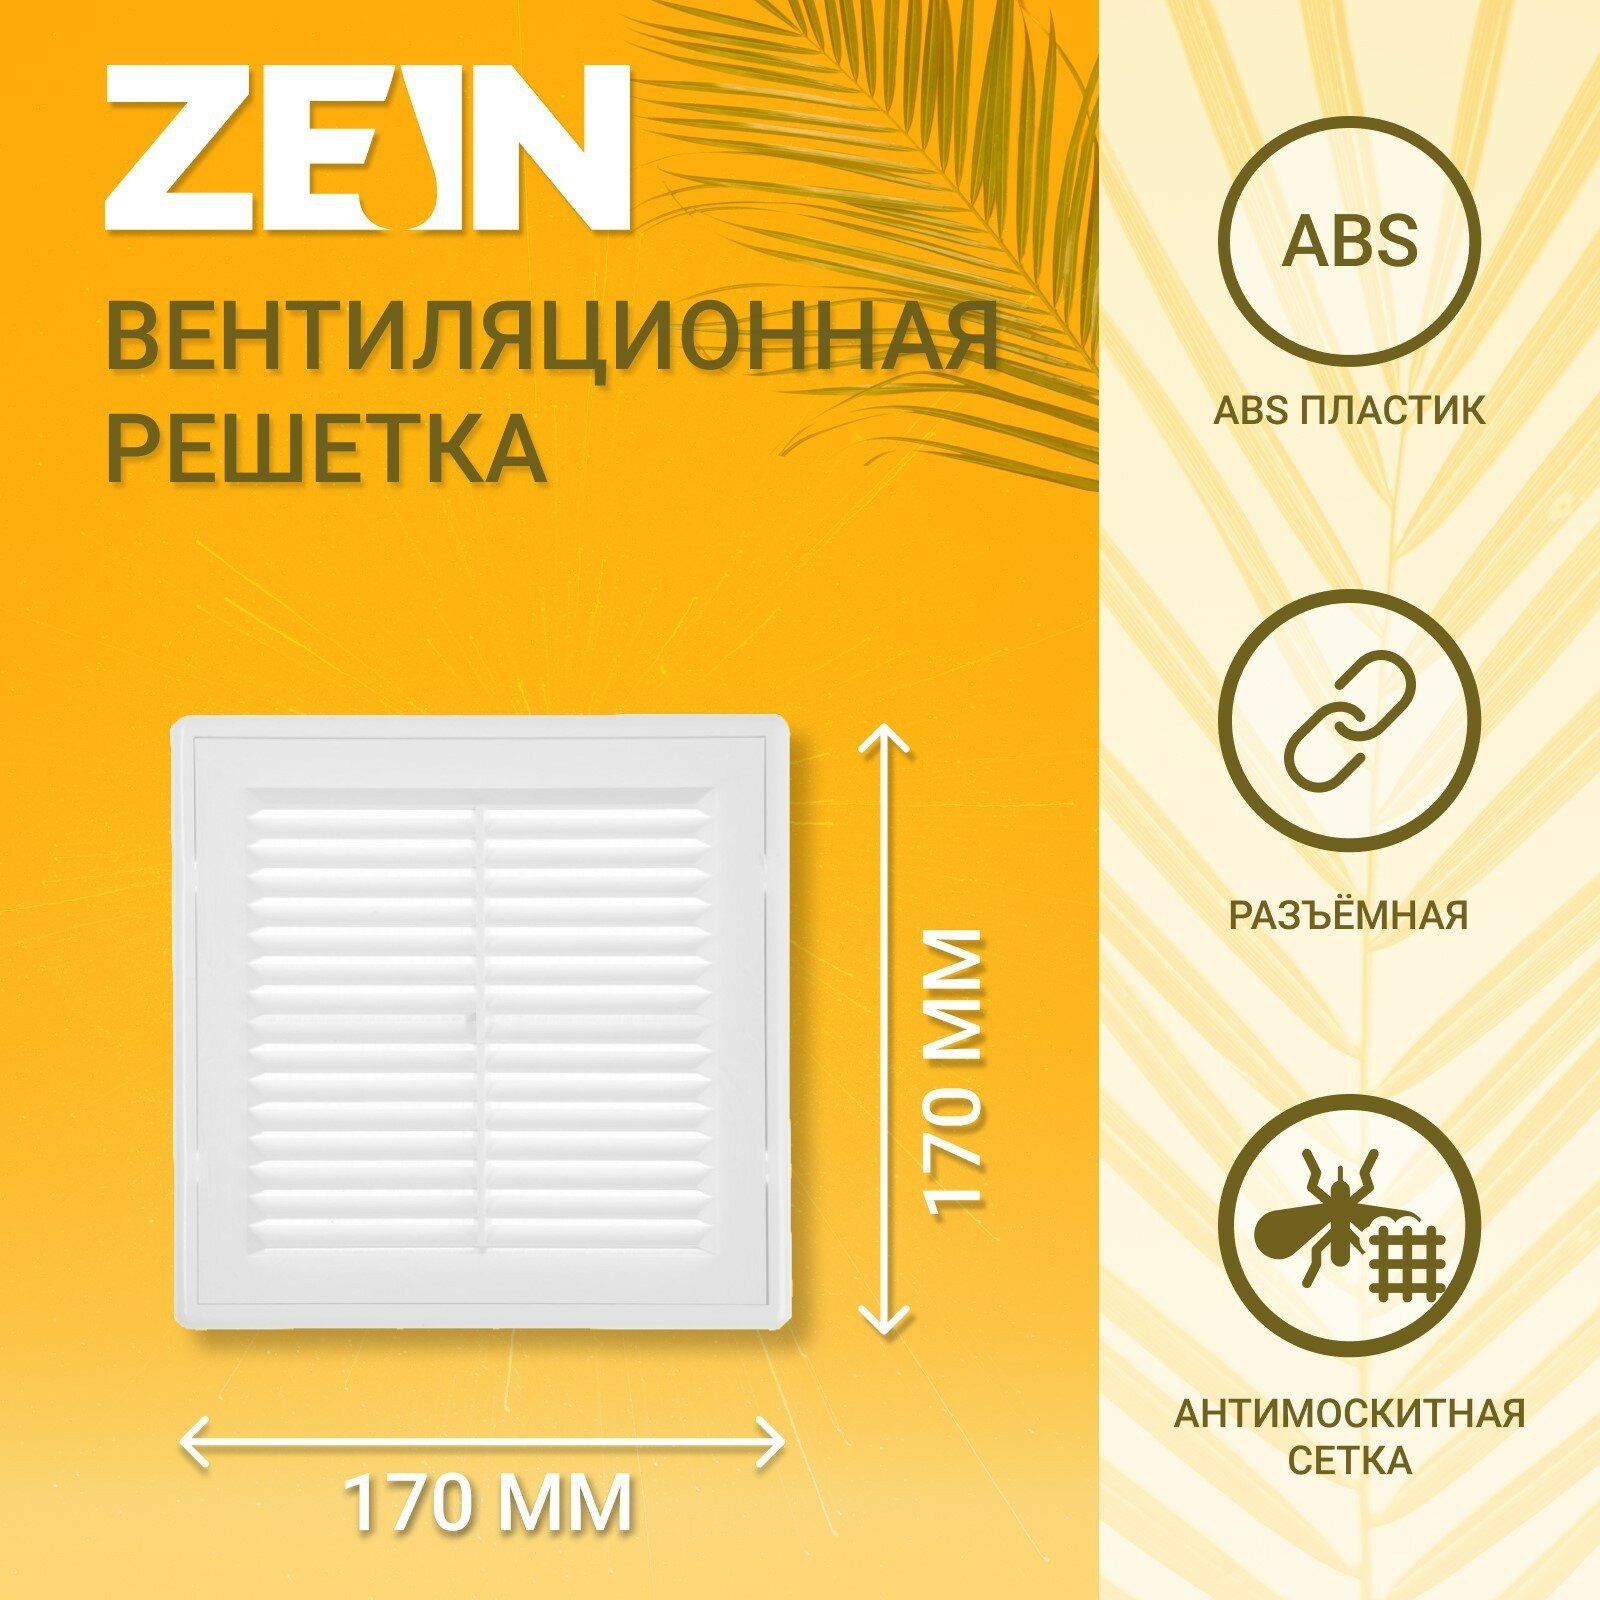 Решетка вентиляционная ZEIN Люкс ЛР170-ОК, 170 x 170 мм, сетка, разъемная, обратный клапан (1шт.)